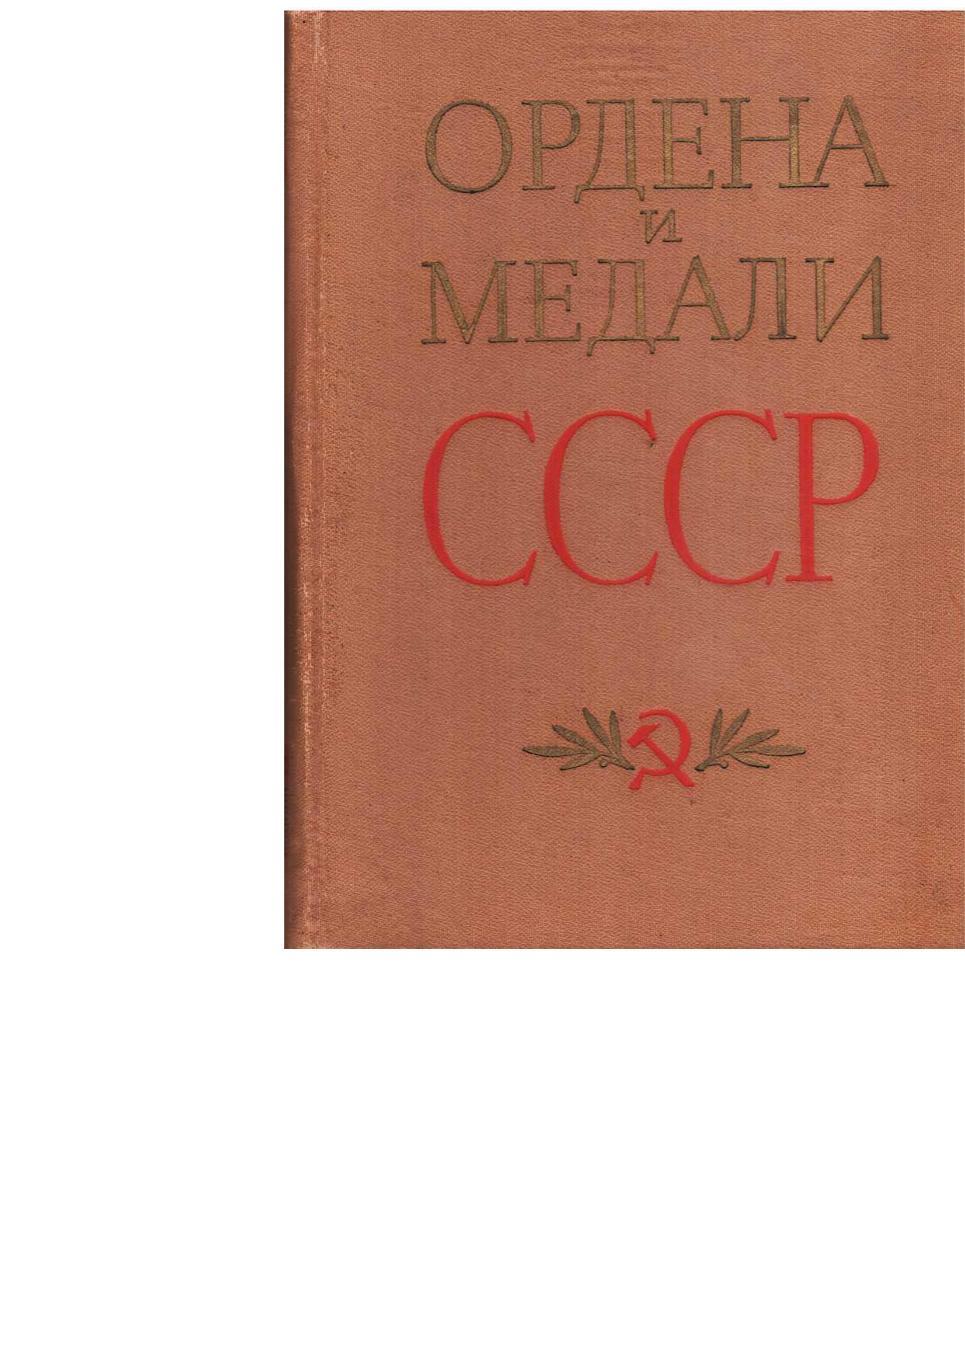 Колесников Г.А., Рожков А.М. Ордена и медали СССР. – М., 1978.